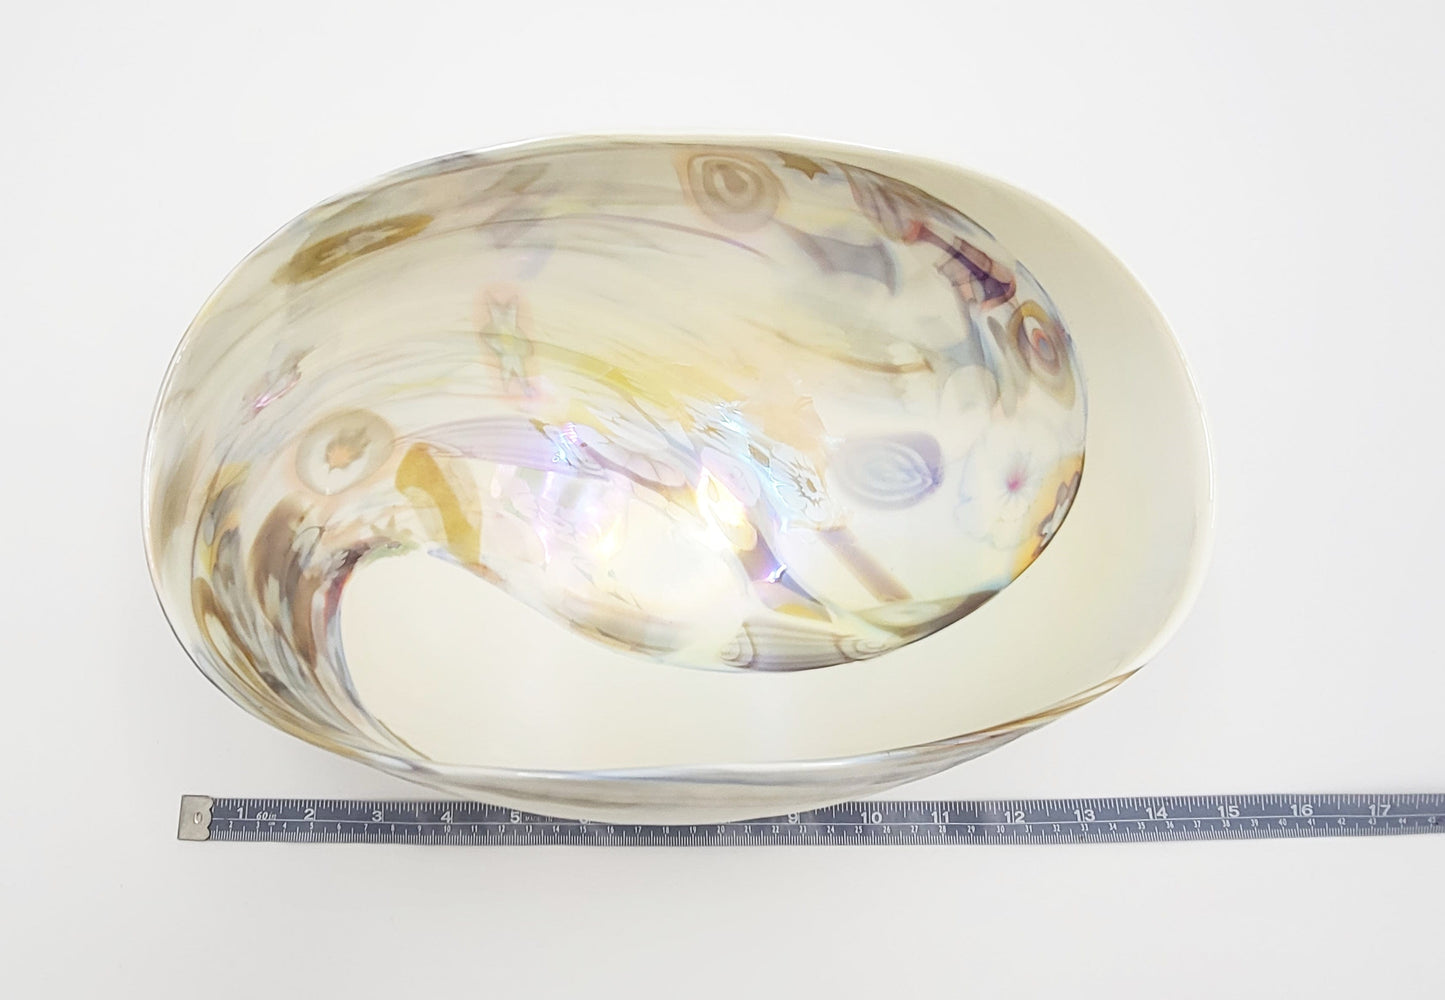 Murano Italy Centerpiece Decorative Bowl Italian Murano Glass Millefiori Cream Colored Curled Edge Décor Bowl C. 1990s